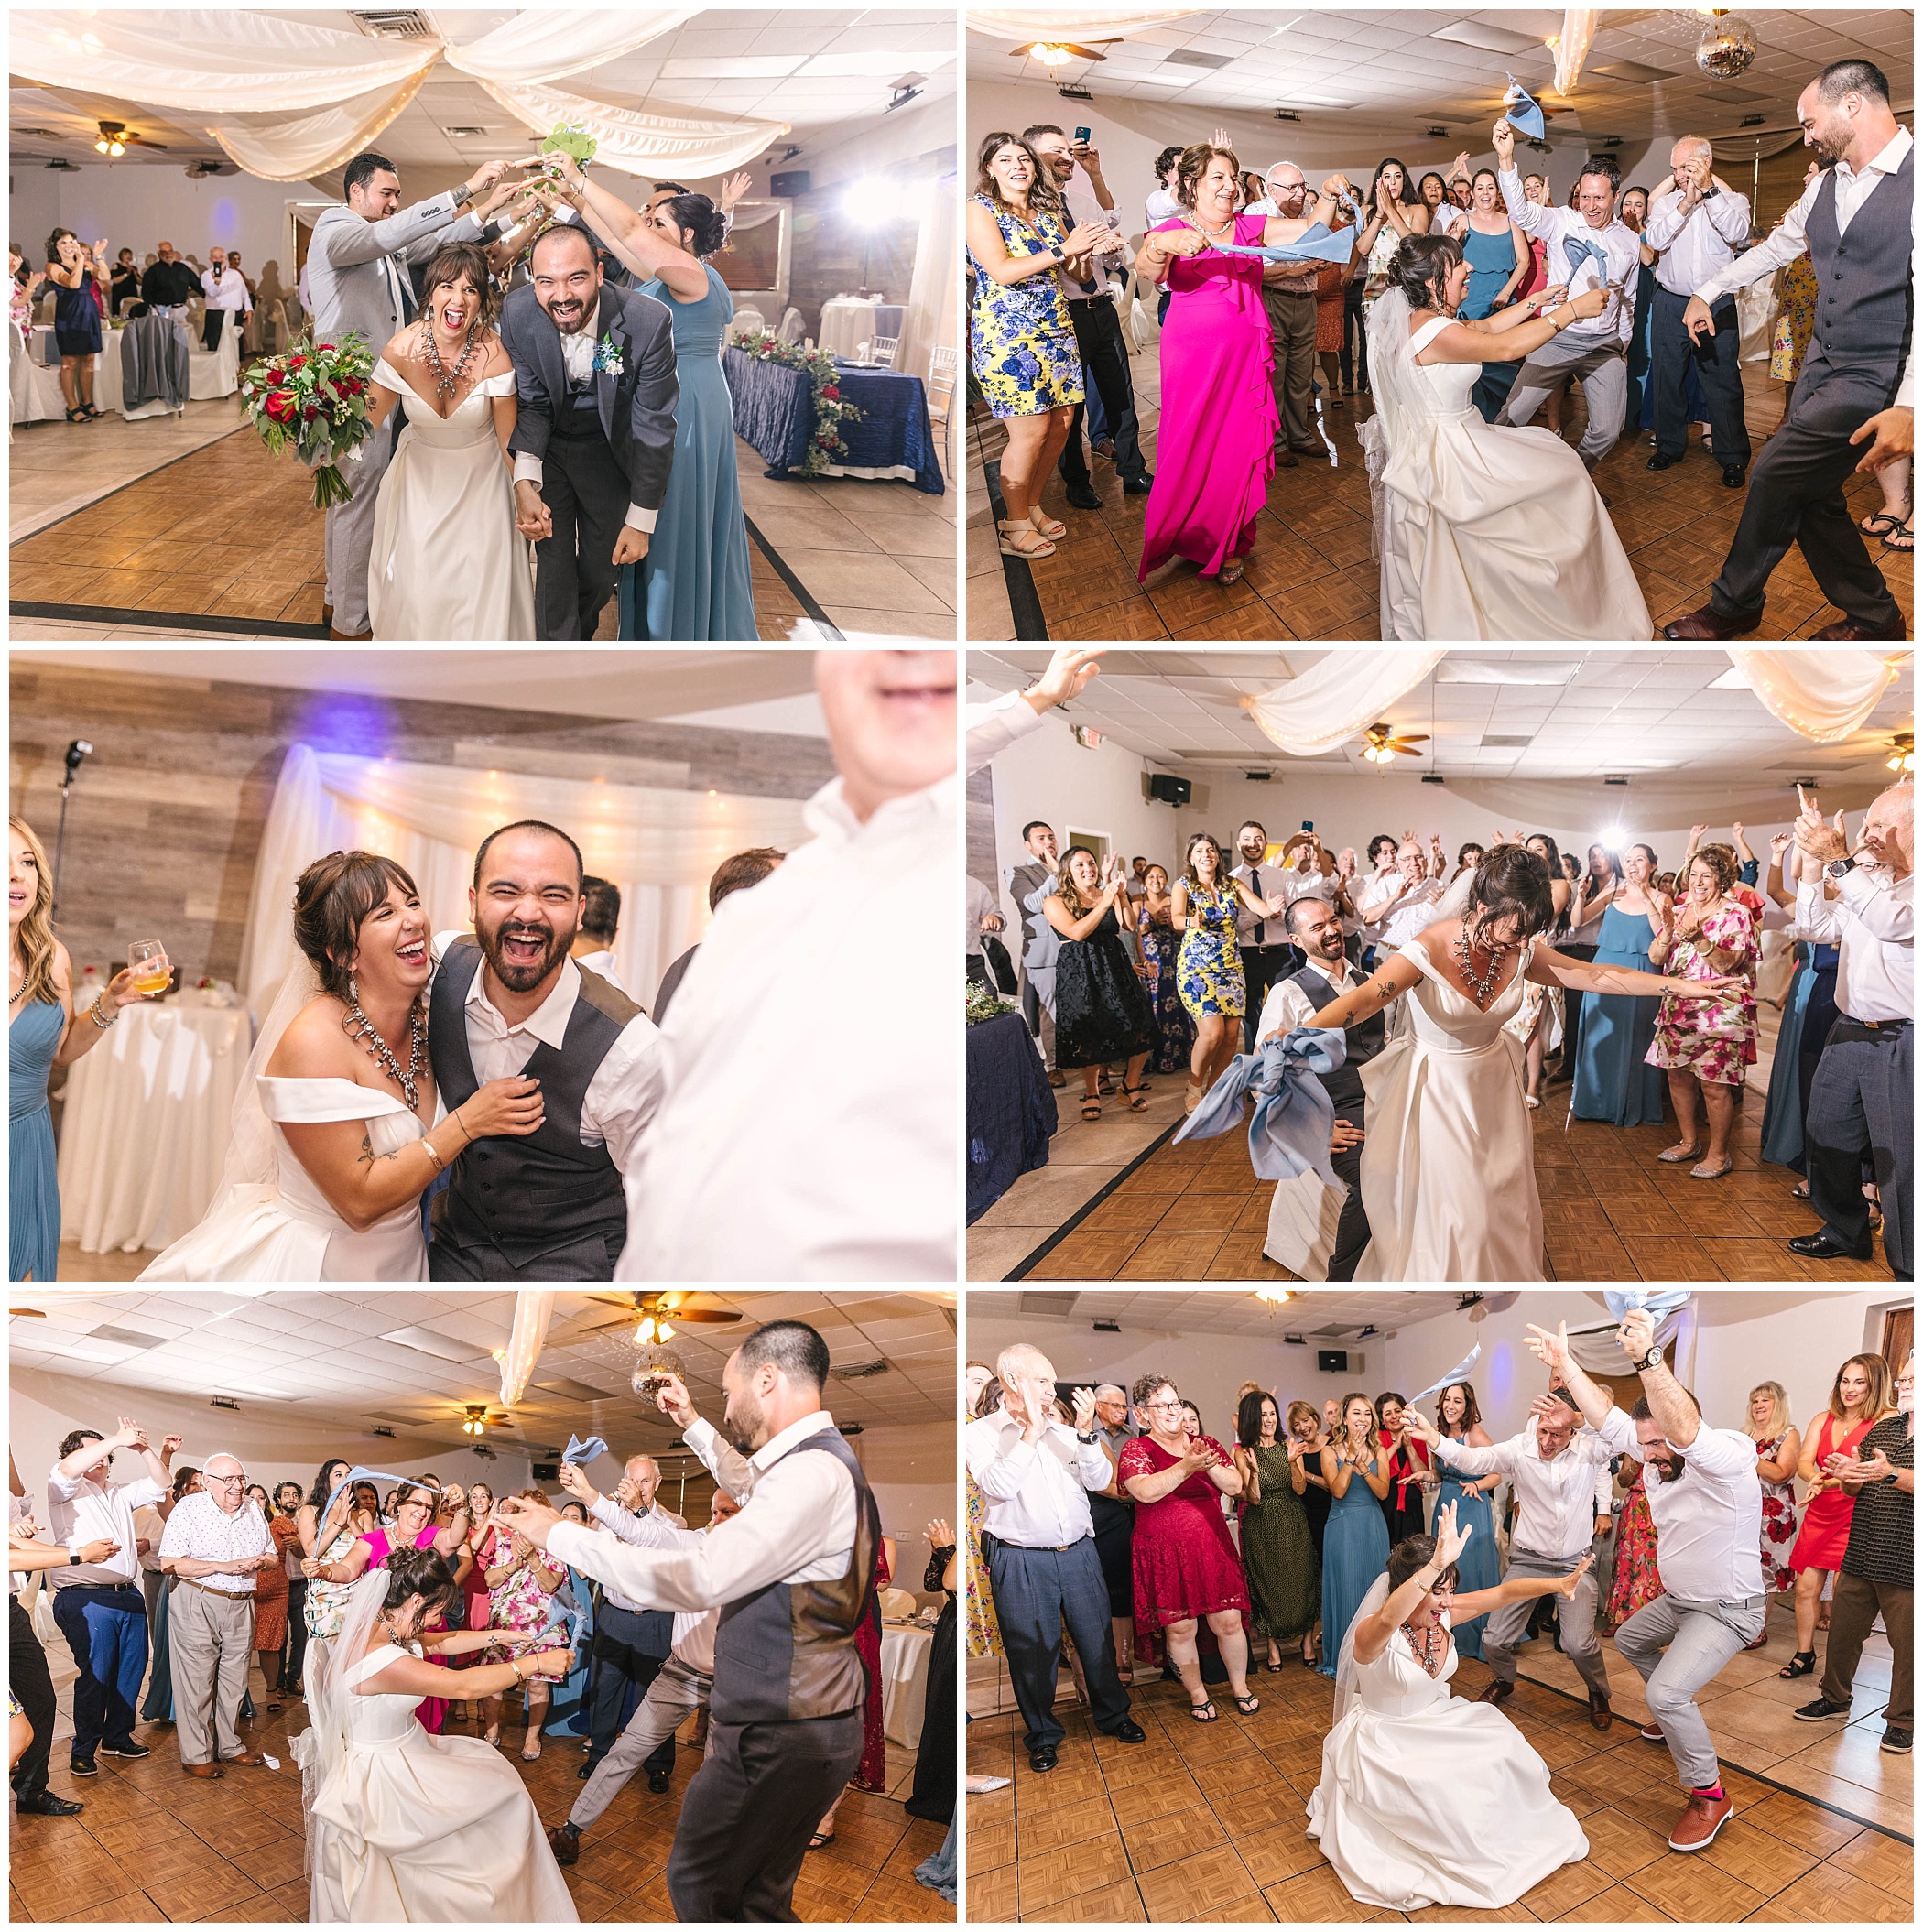 vibrant dancing at Casas de Suenos wedding reception venue